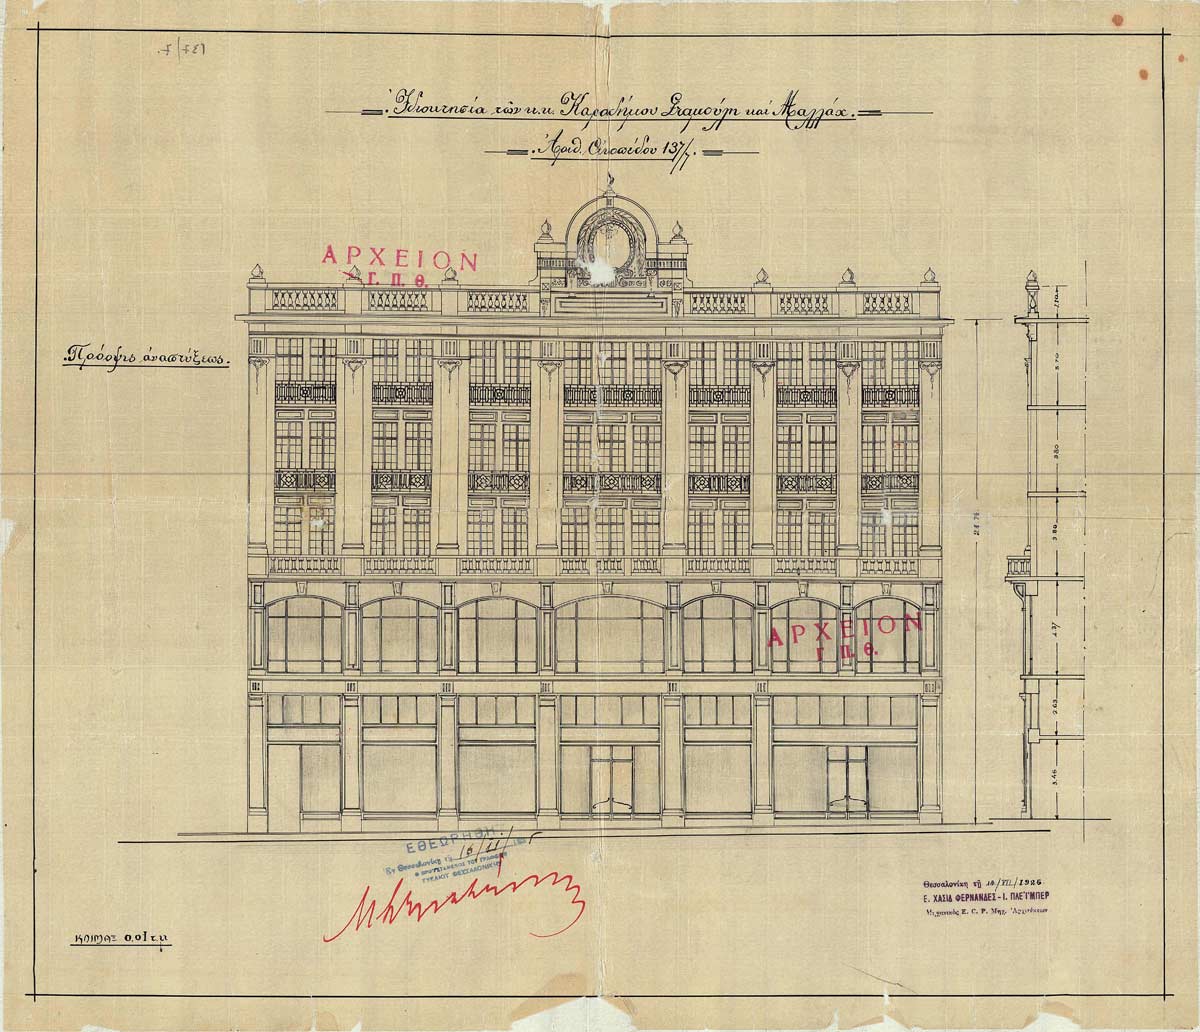 Immeuble Karadimos-Statmoulis & Mallah, ingénieur Joseph Pleyber, 1925, Archives de la municipalité de Thessalonique, Direction d’urbanisme et d’études d’architecture, Département de planification urbaine.